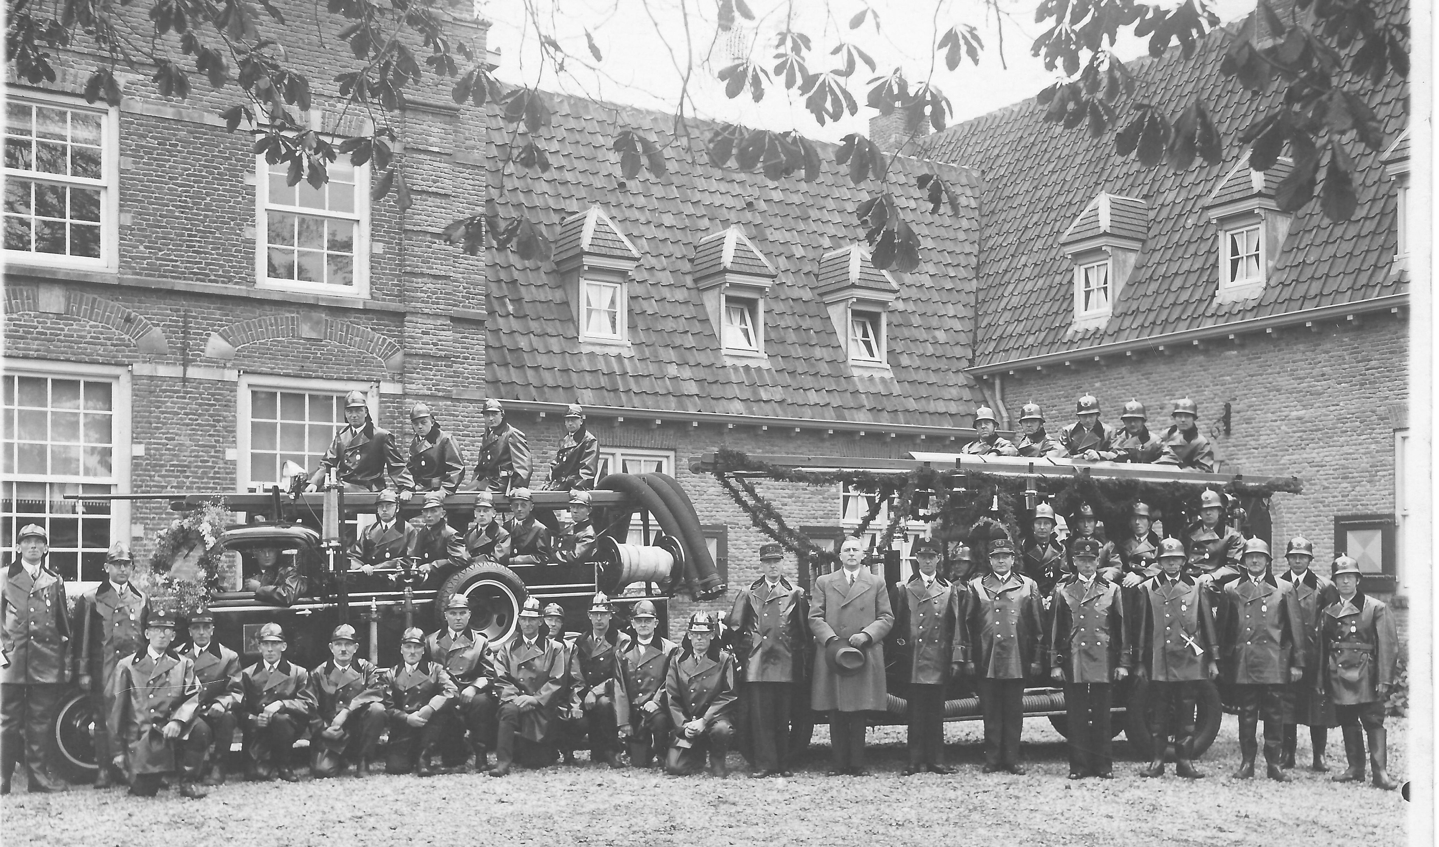 Foto Koch (Hilversum) maakte deze foto in 1936 met de Maartensdijkse Brandweer t.g.v. de installatie van de heer Roelof Tjalma als burgemeester van Maartensdijk. (uit de verzameling van Koos Kolenbrander)